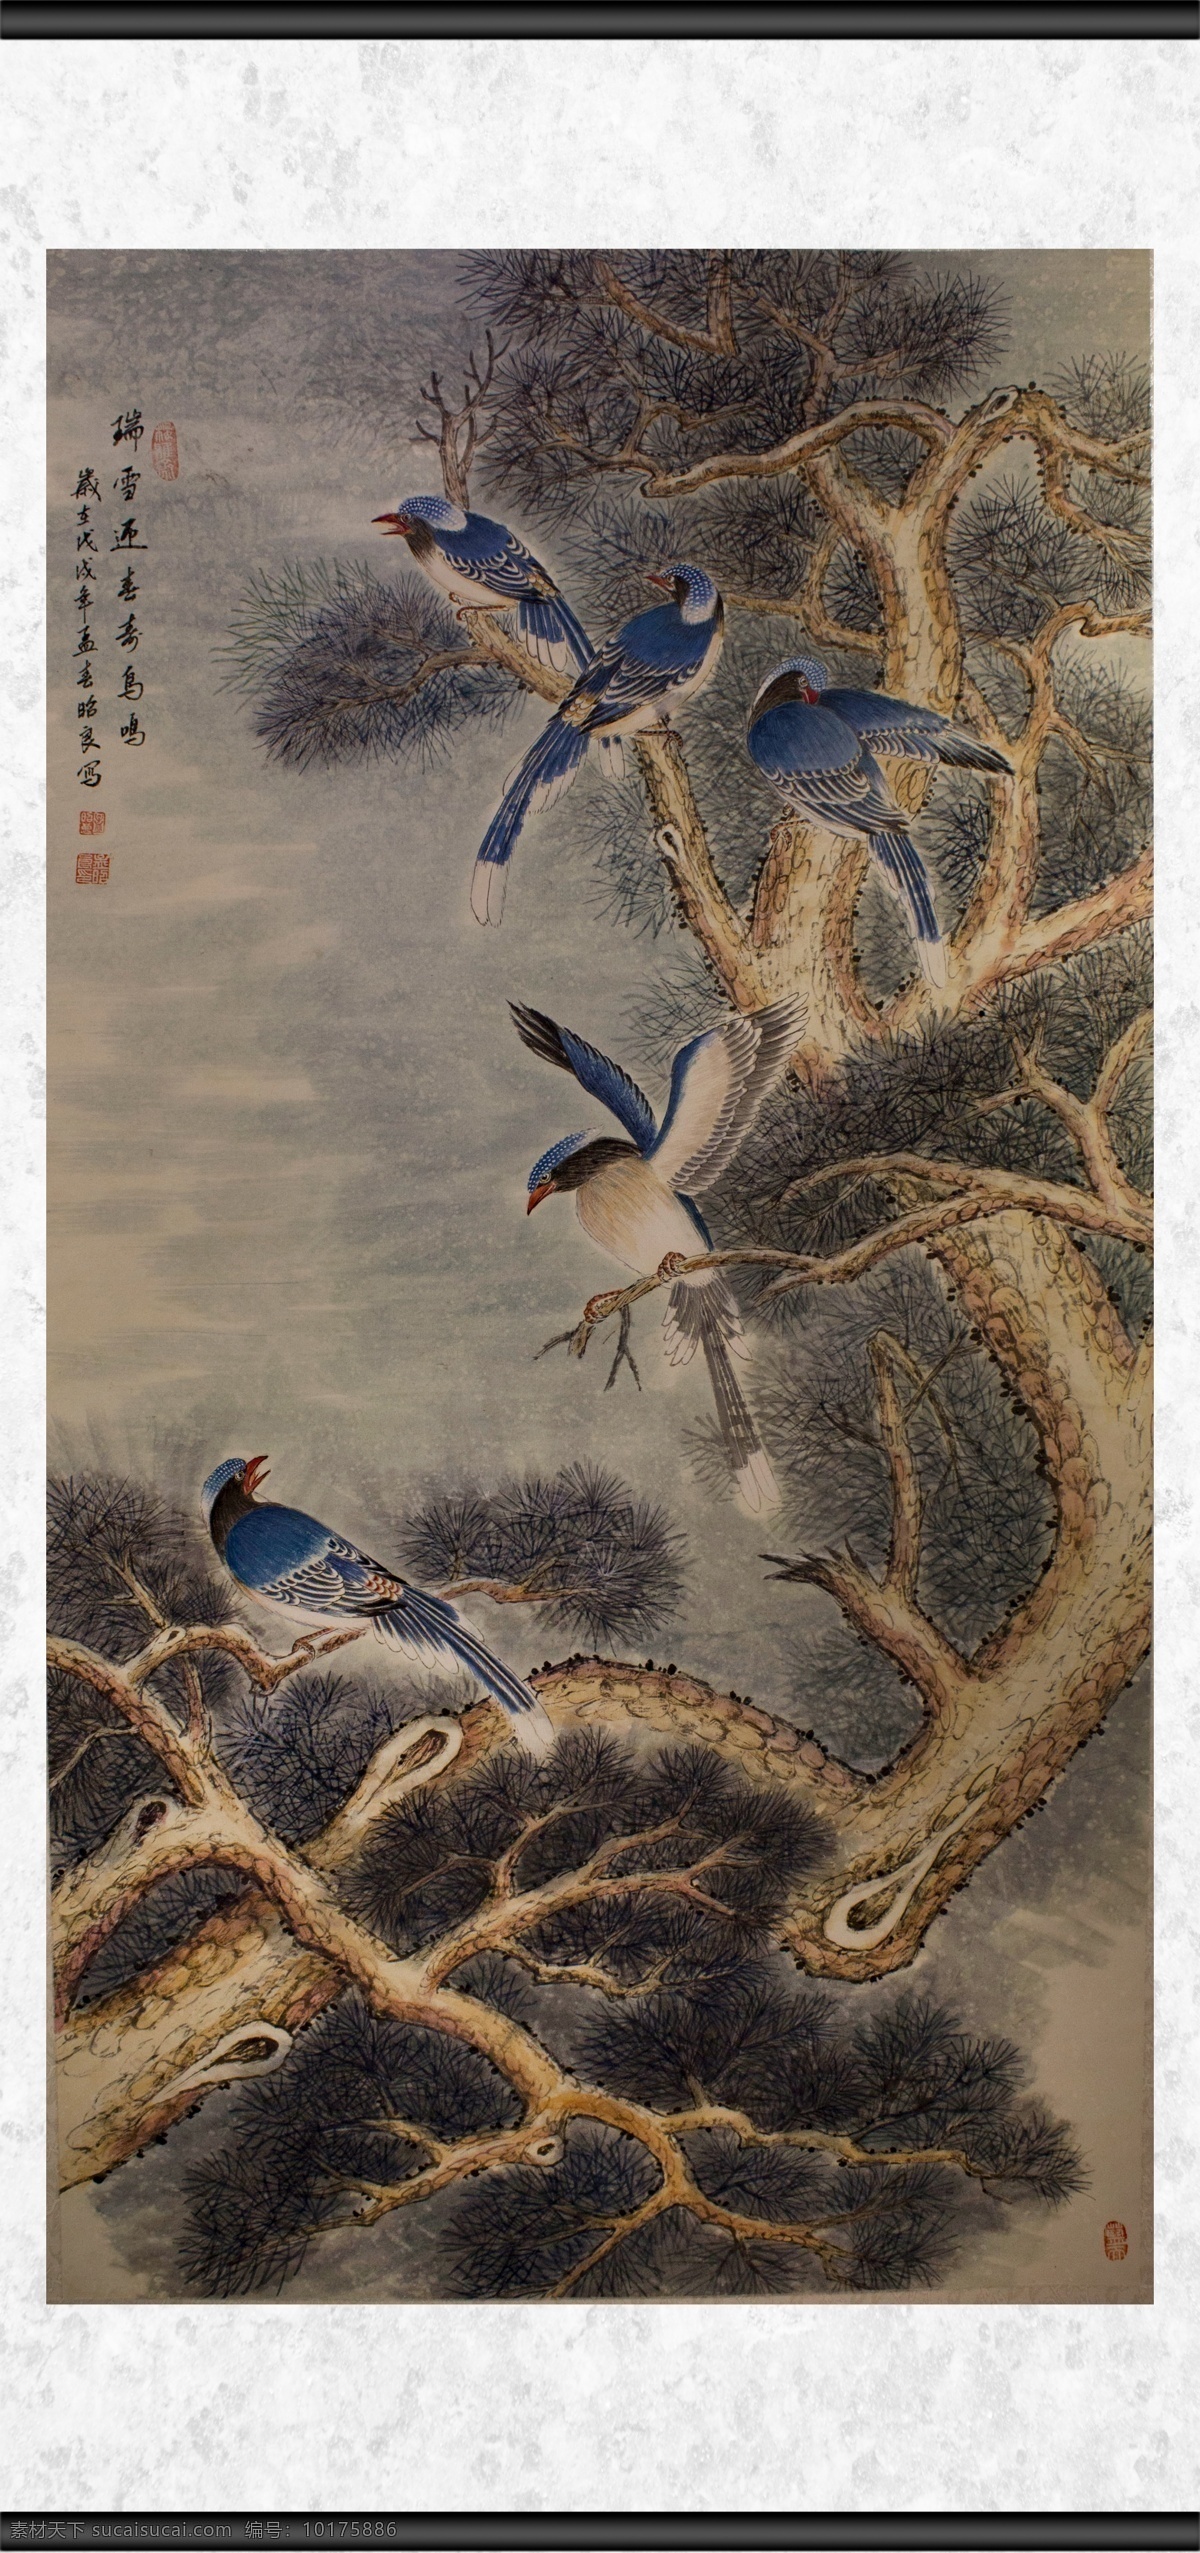 鸟鸣 植物 观赏 鸟儿 动物 绘画 插画 文化艺术 传统文化